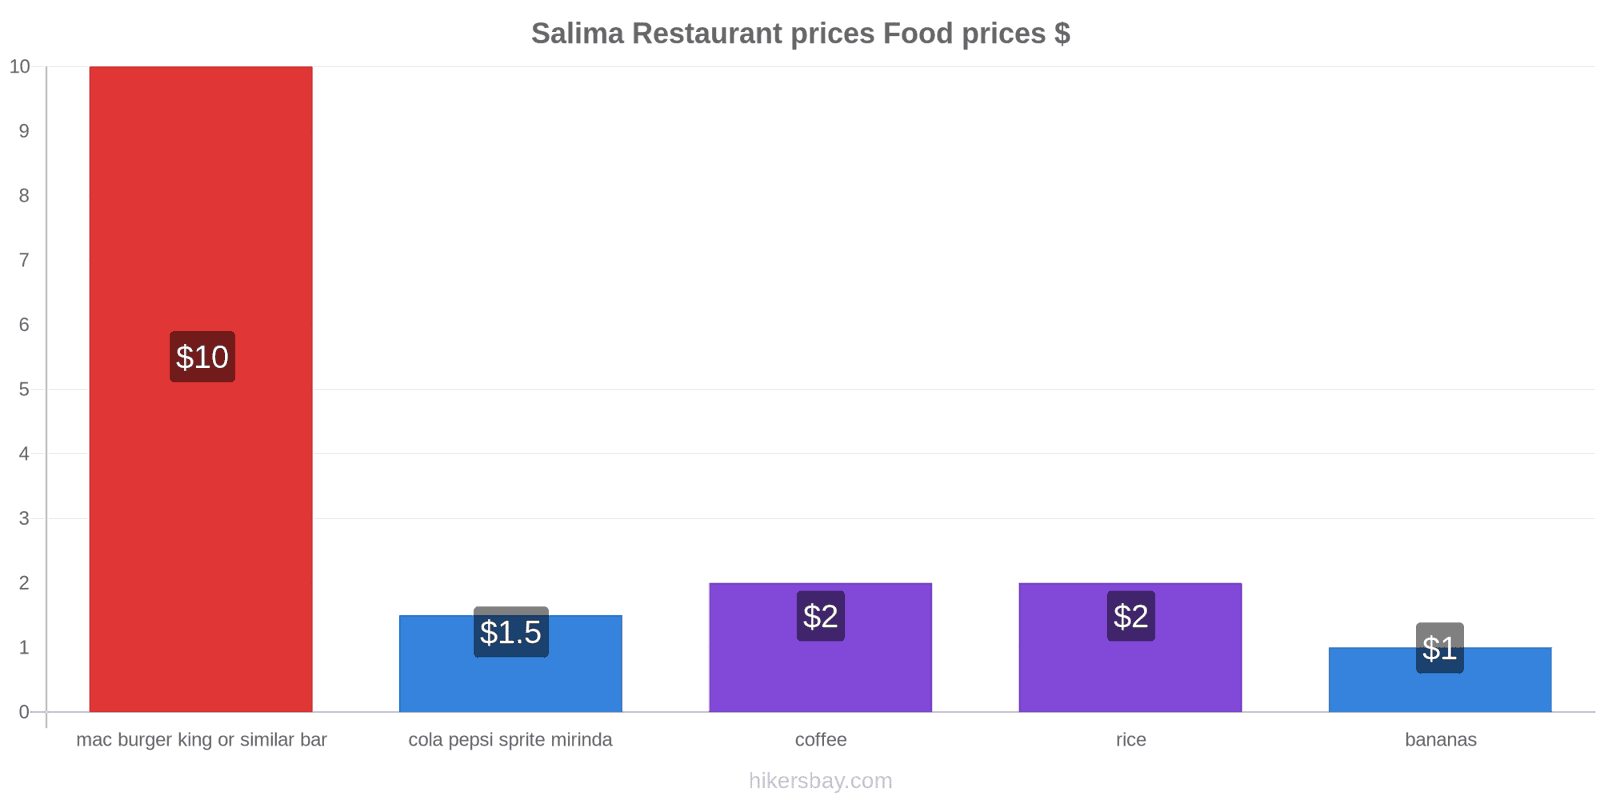 Salima price changes hikersbay.com